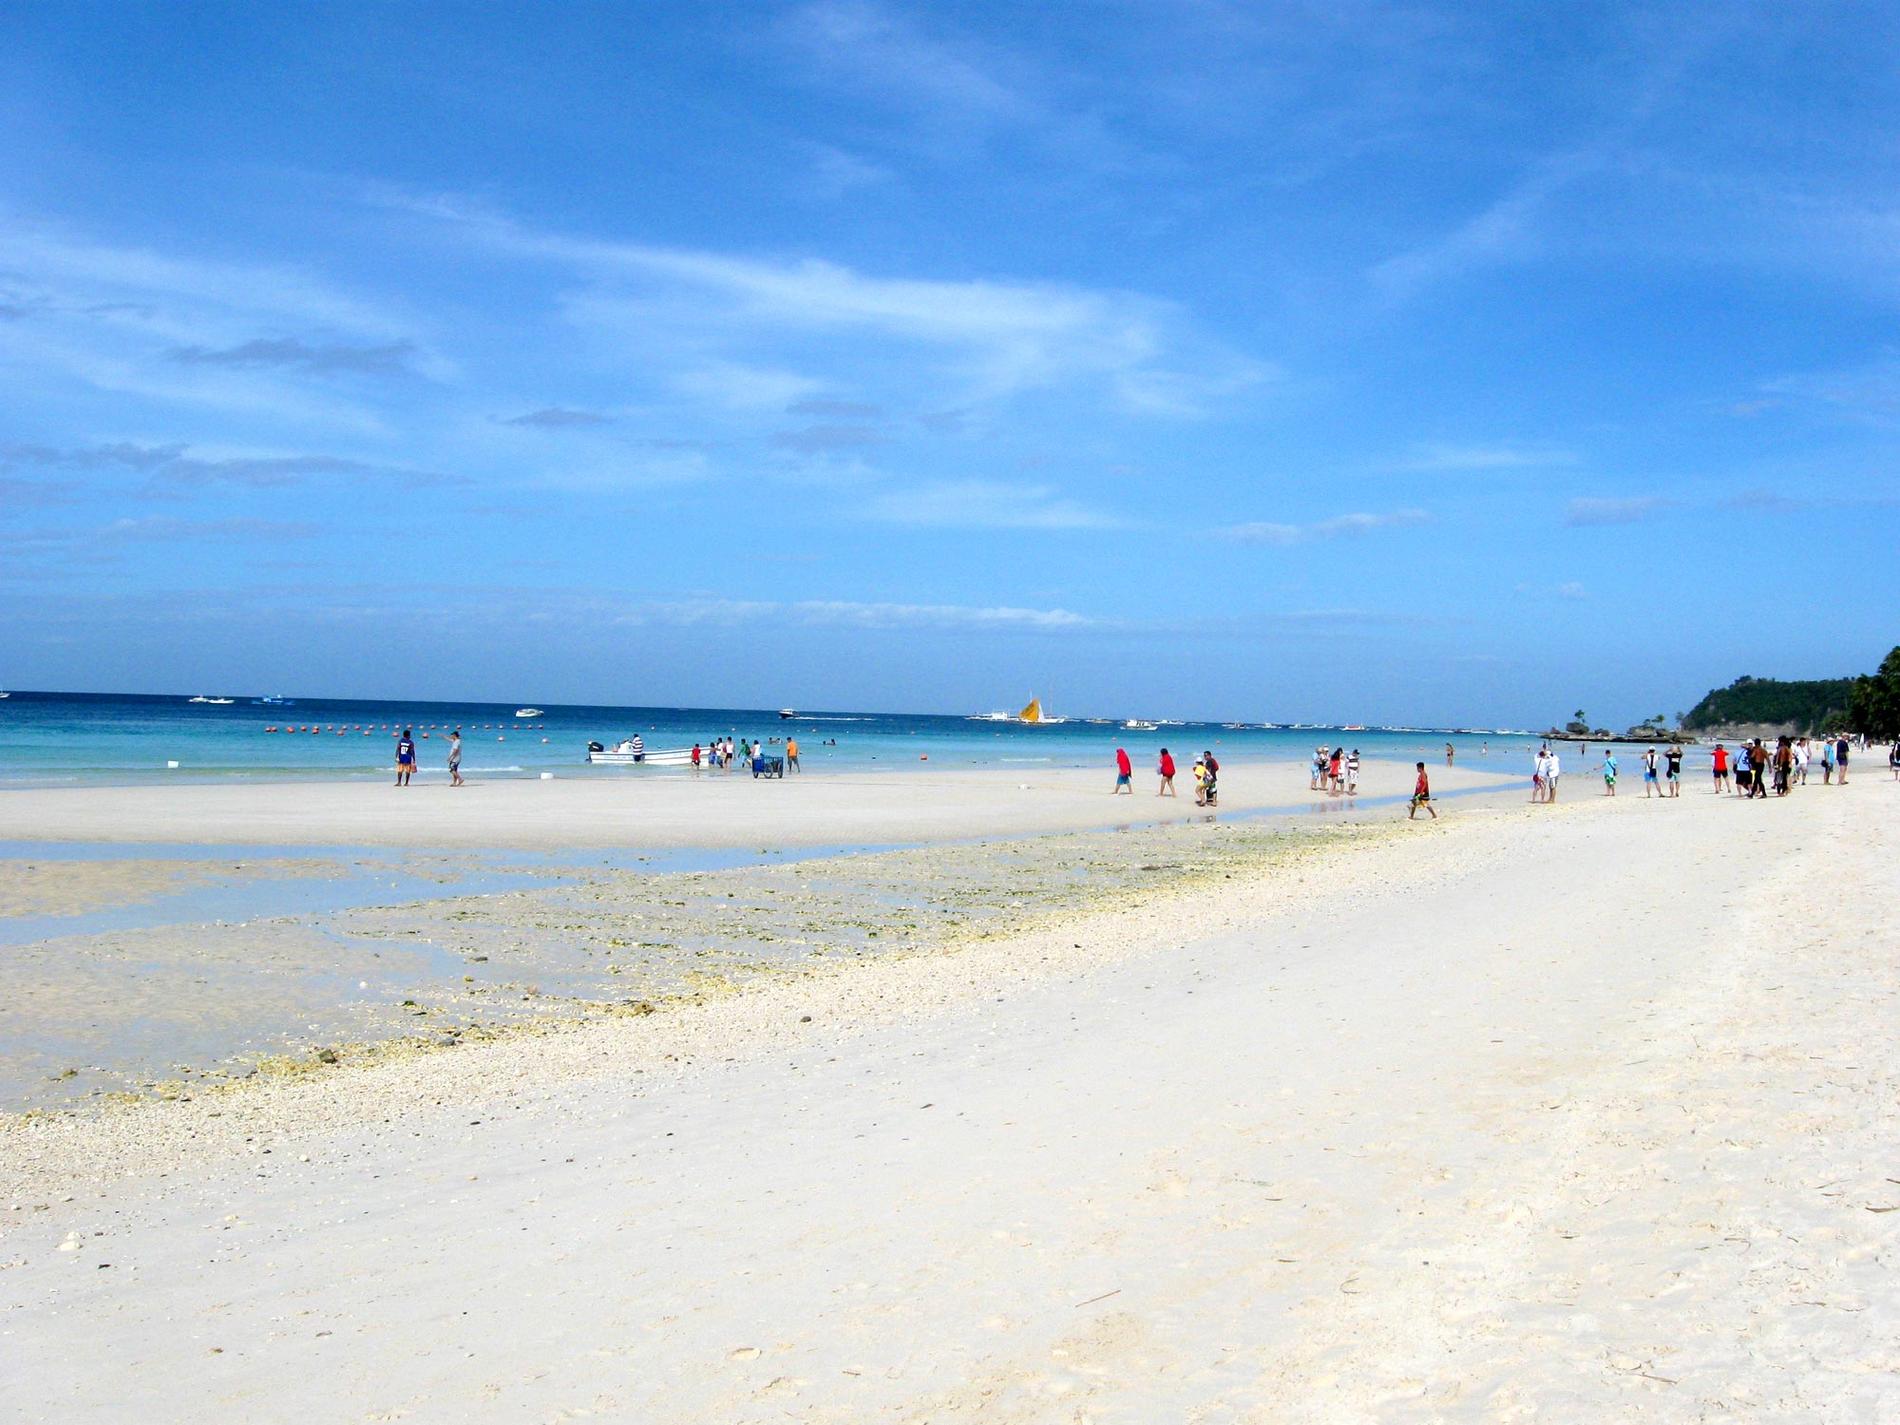 2. Boracay, Filippinerna Den lilla filippinska ön Boracay är bara sju kilometer lång, varav fem upptas av den magnifika White Beach på öns västra sida. Här ligger också de flesta av öns runt 200 hotell, restauranger och barer. Dessutom finns en rad mindre stränder lite varstans runt ön. Sök flyg till Filippinerna
Charter till Filippinerna kostar från 7000 kronor - kolla in här